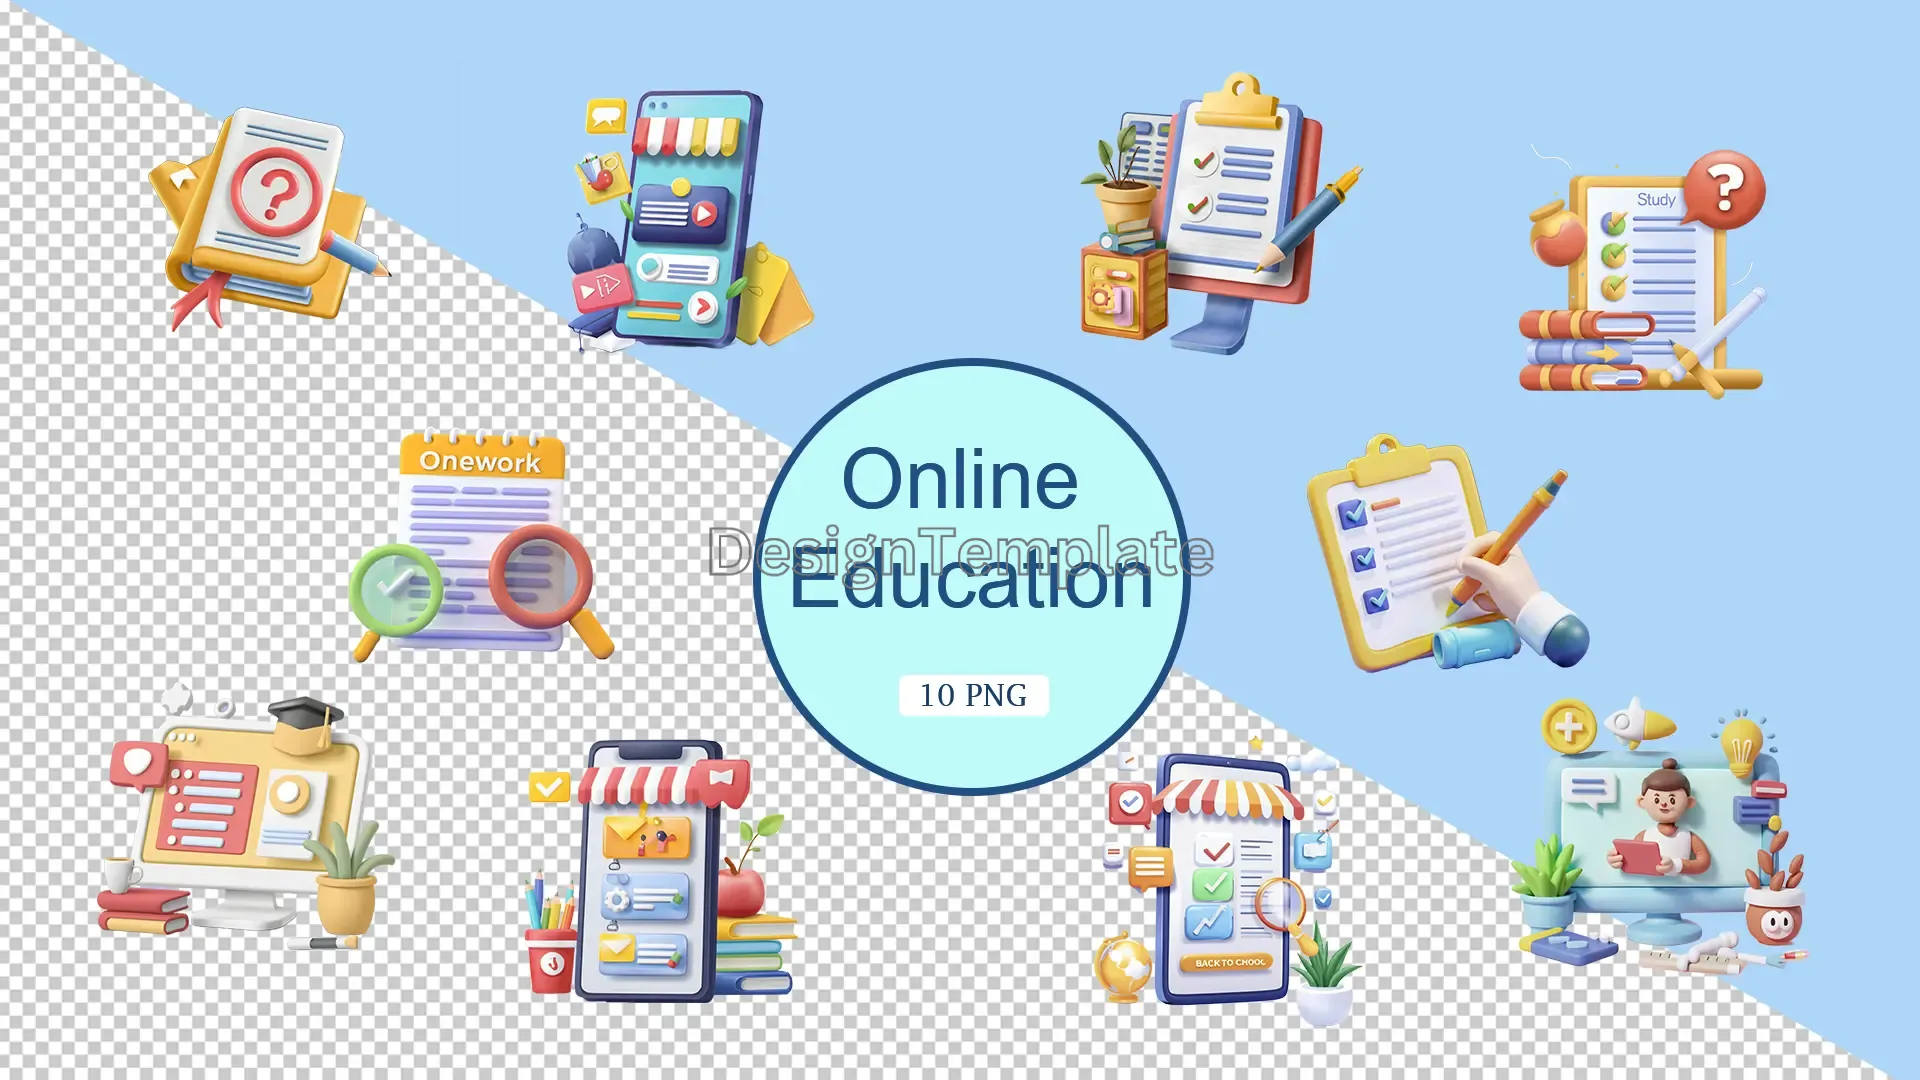 Online Education 3D Elements Pack image